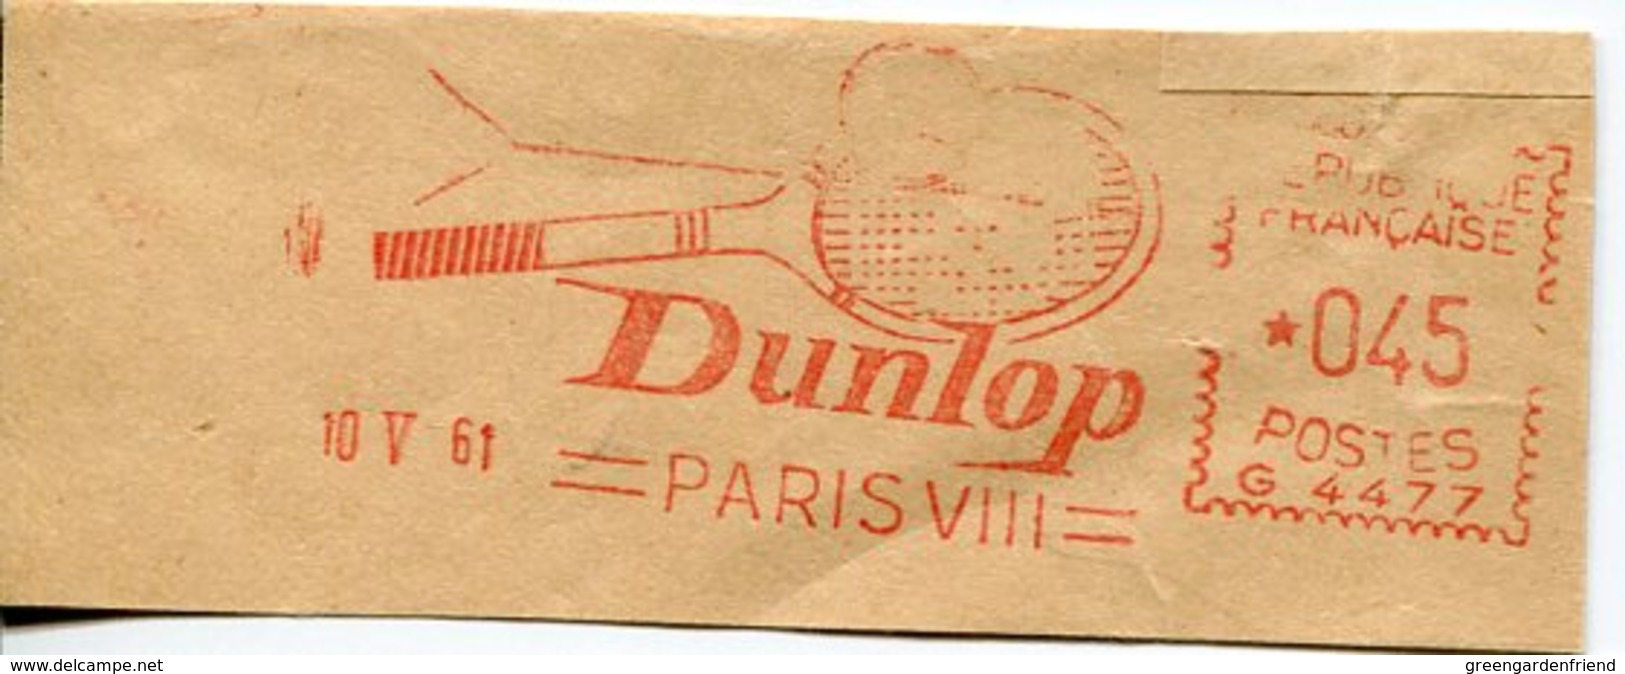 39905g  France., Red Meter Freistempel Ema (CUT)  1961, Paris,  Dunlop, Tennis Racket,Tennisschläger - Tennis